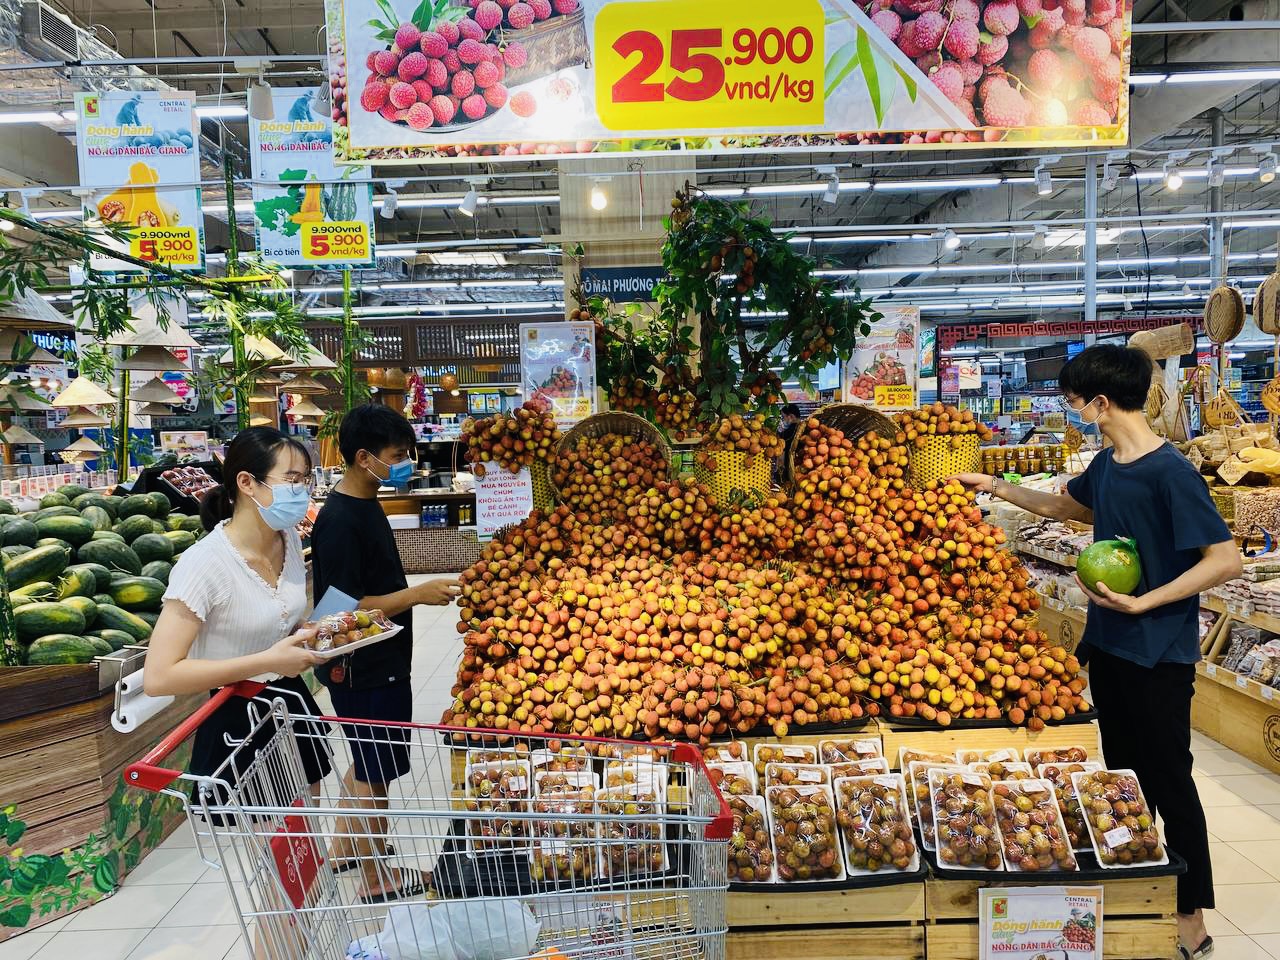 Giá bải thiều bán lẻ trong siêu thị Việt bằng 1/5 giá bán trong siêu thị ở Singapore /// Ảnh: Ng.Ng